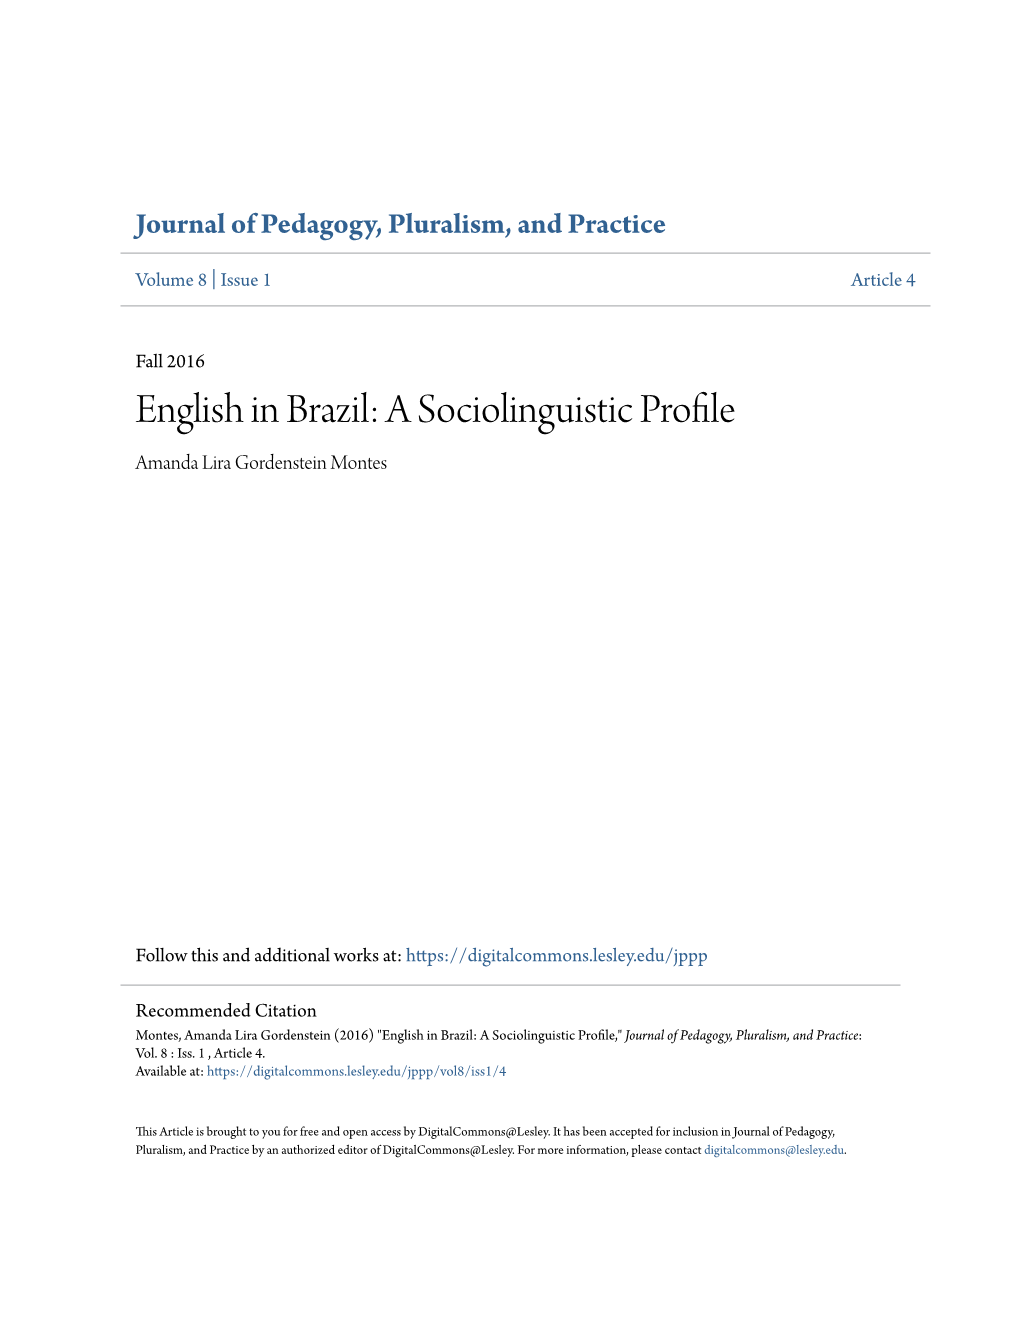 English in Brazil: a Sociolinguistic Profile Amanda Lira Gordenstein Montes